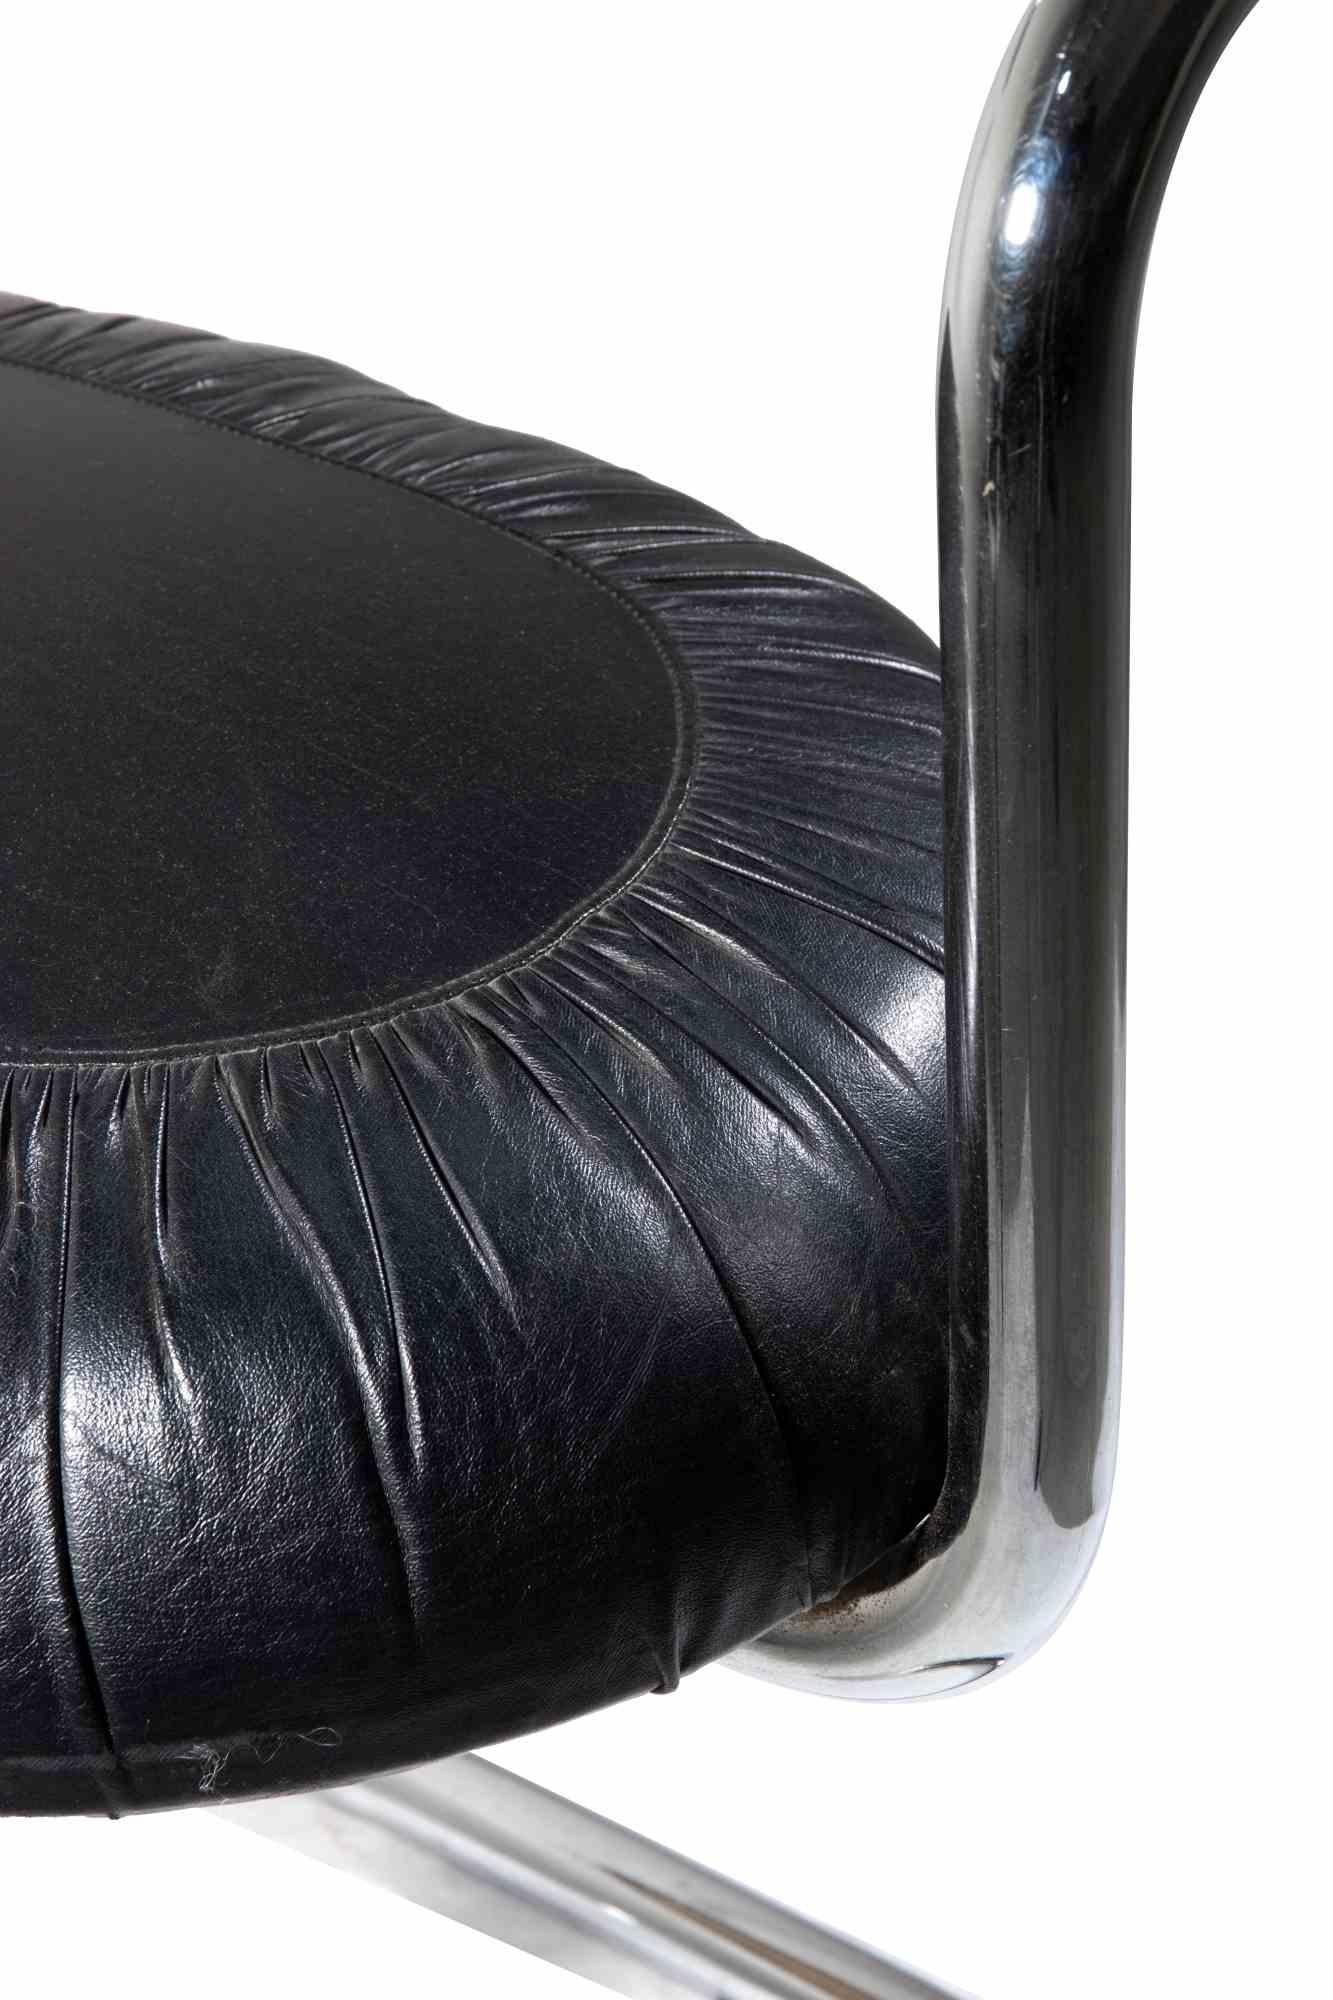 Ensemble de 4 chaises Cobra noires par Giotto Stoppino, Italie 1970.

Structure en acier tubulaire chromé et cuir noir.

78x49x46 cm. Kg. 30 (ensemble)

Bonnes conditions. 


Giotto Stoppino est né à Milan en 1926. Il a étudié à Venise puis